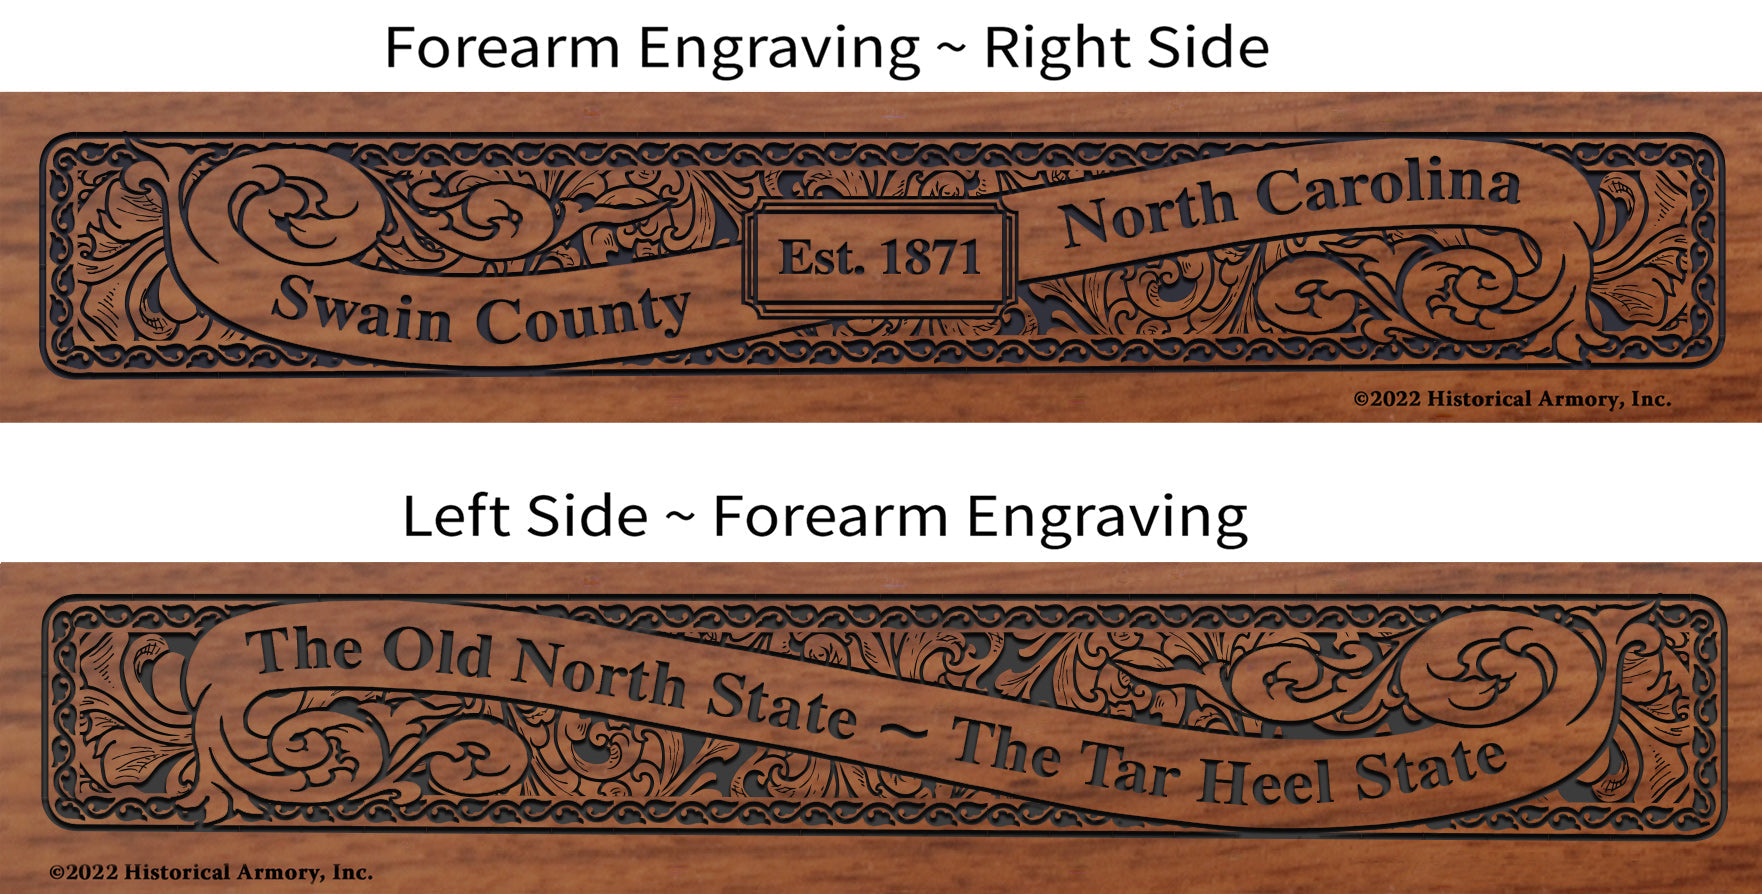 Swain County North Carolina Engraved Rifle Forearm